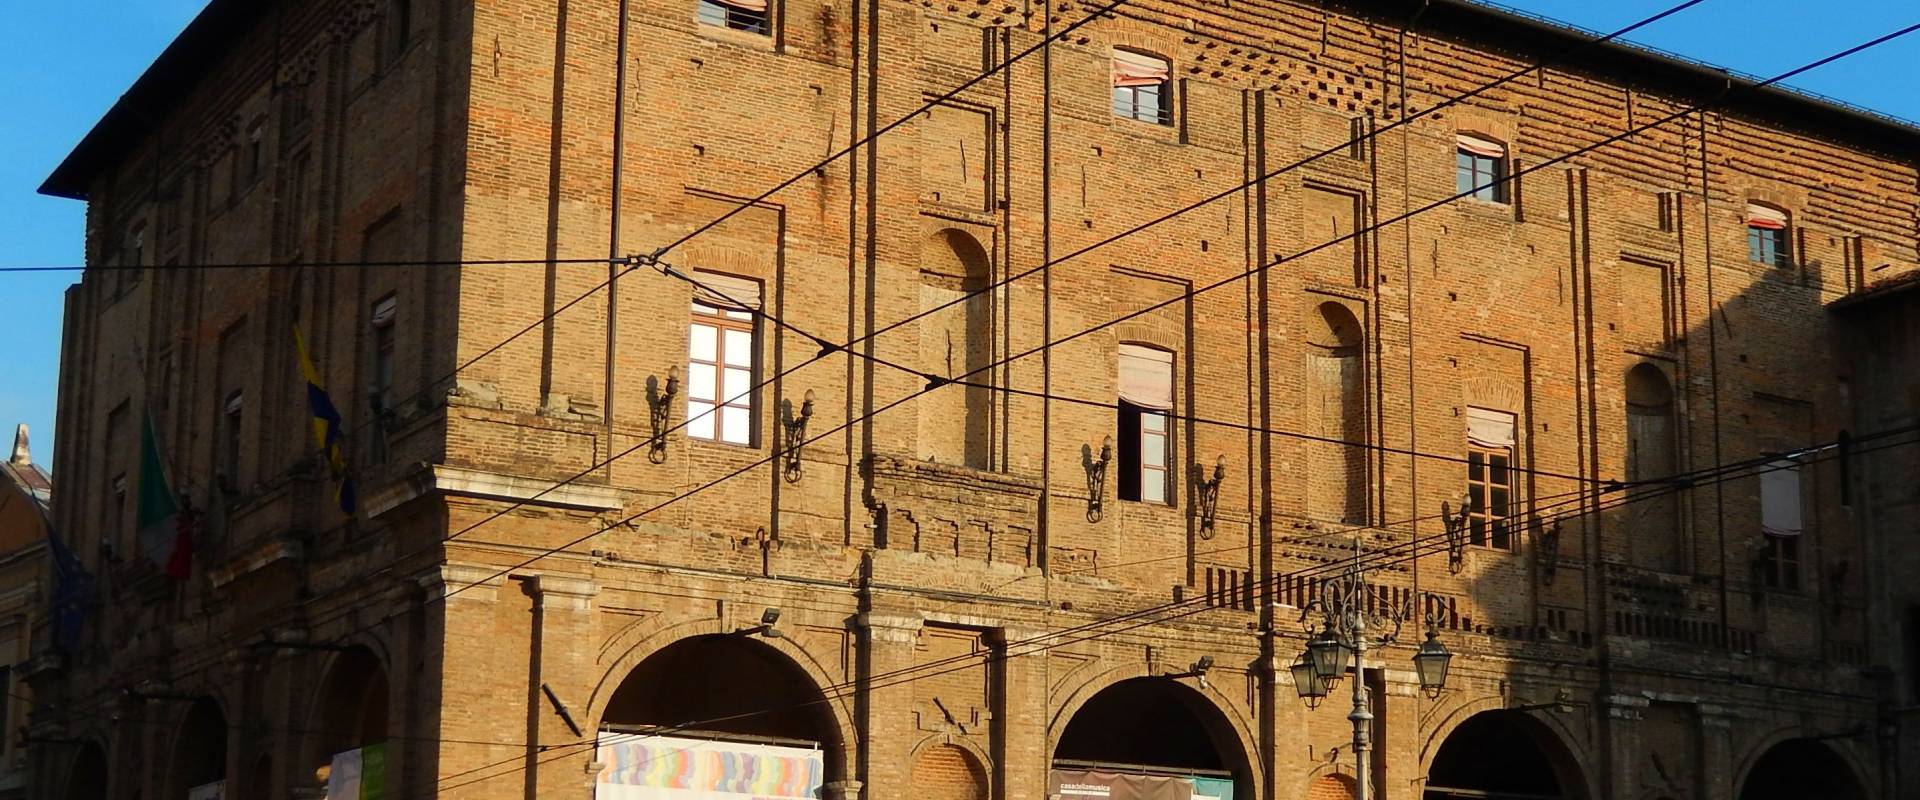 Palazzo del Comune di Parma 02 foto di Luca Fornasari